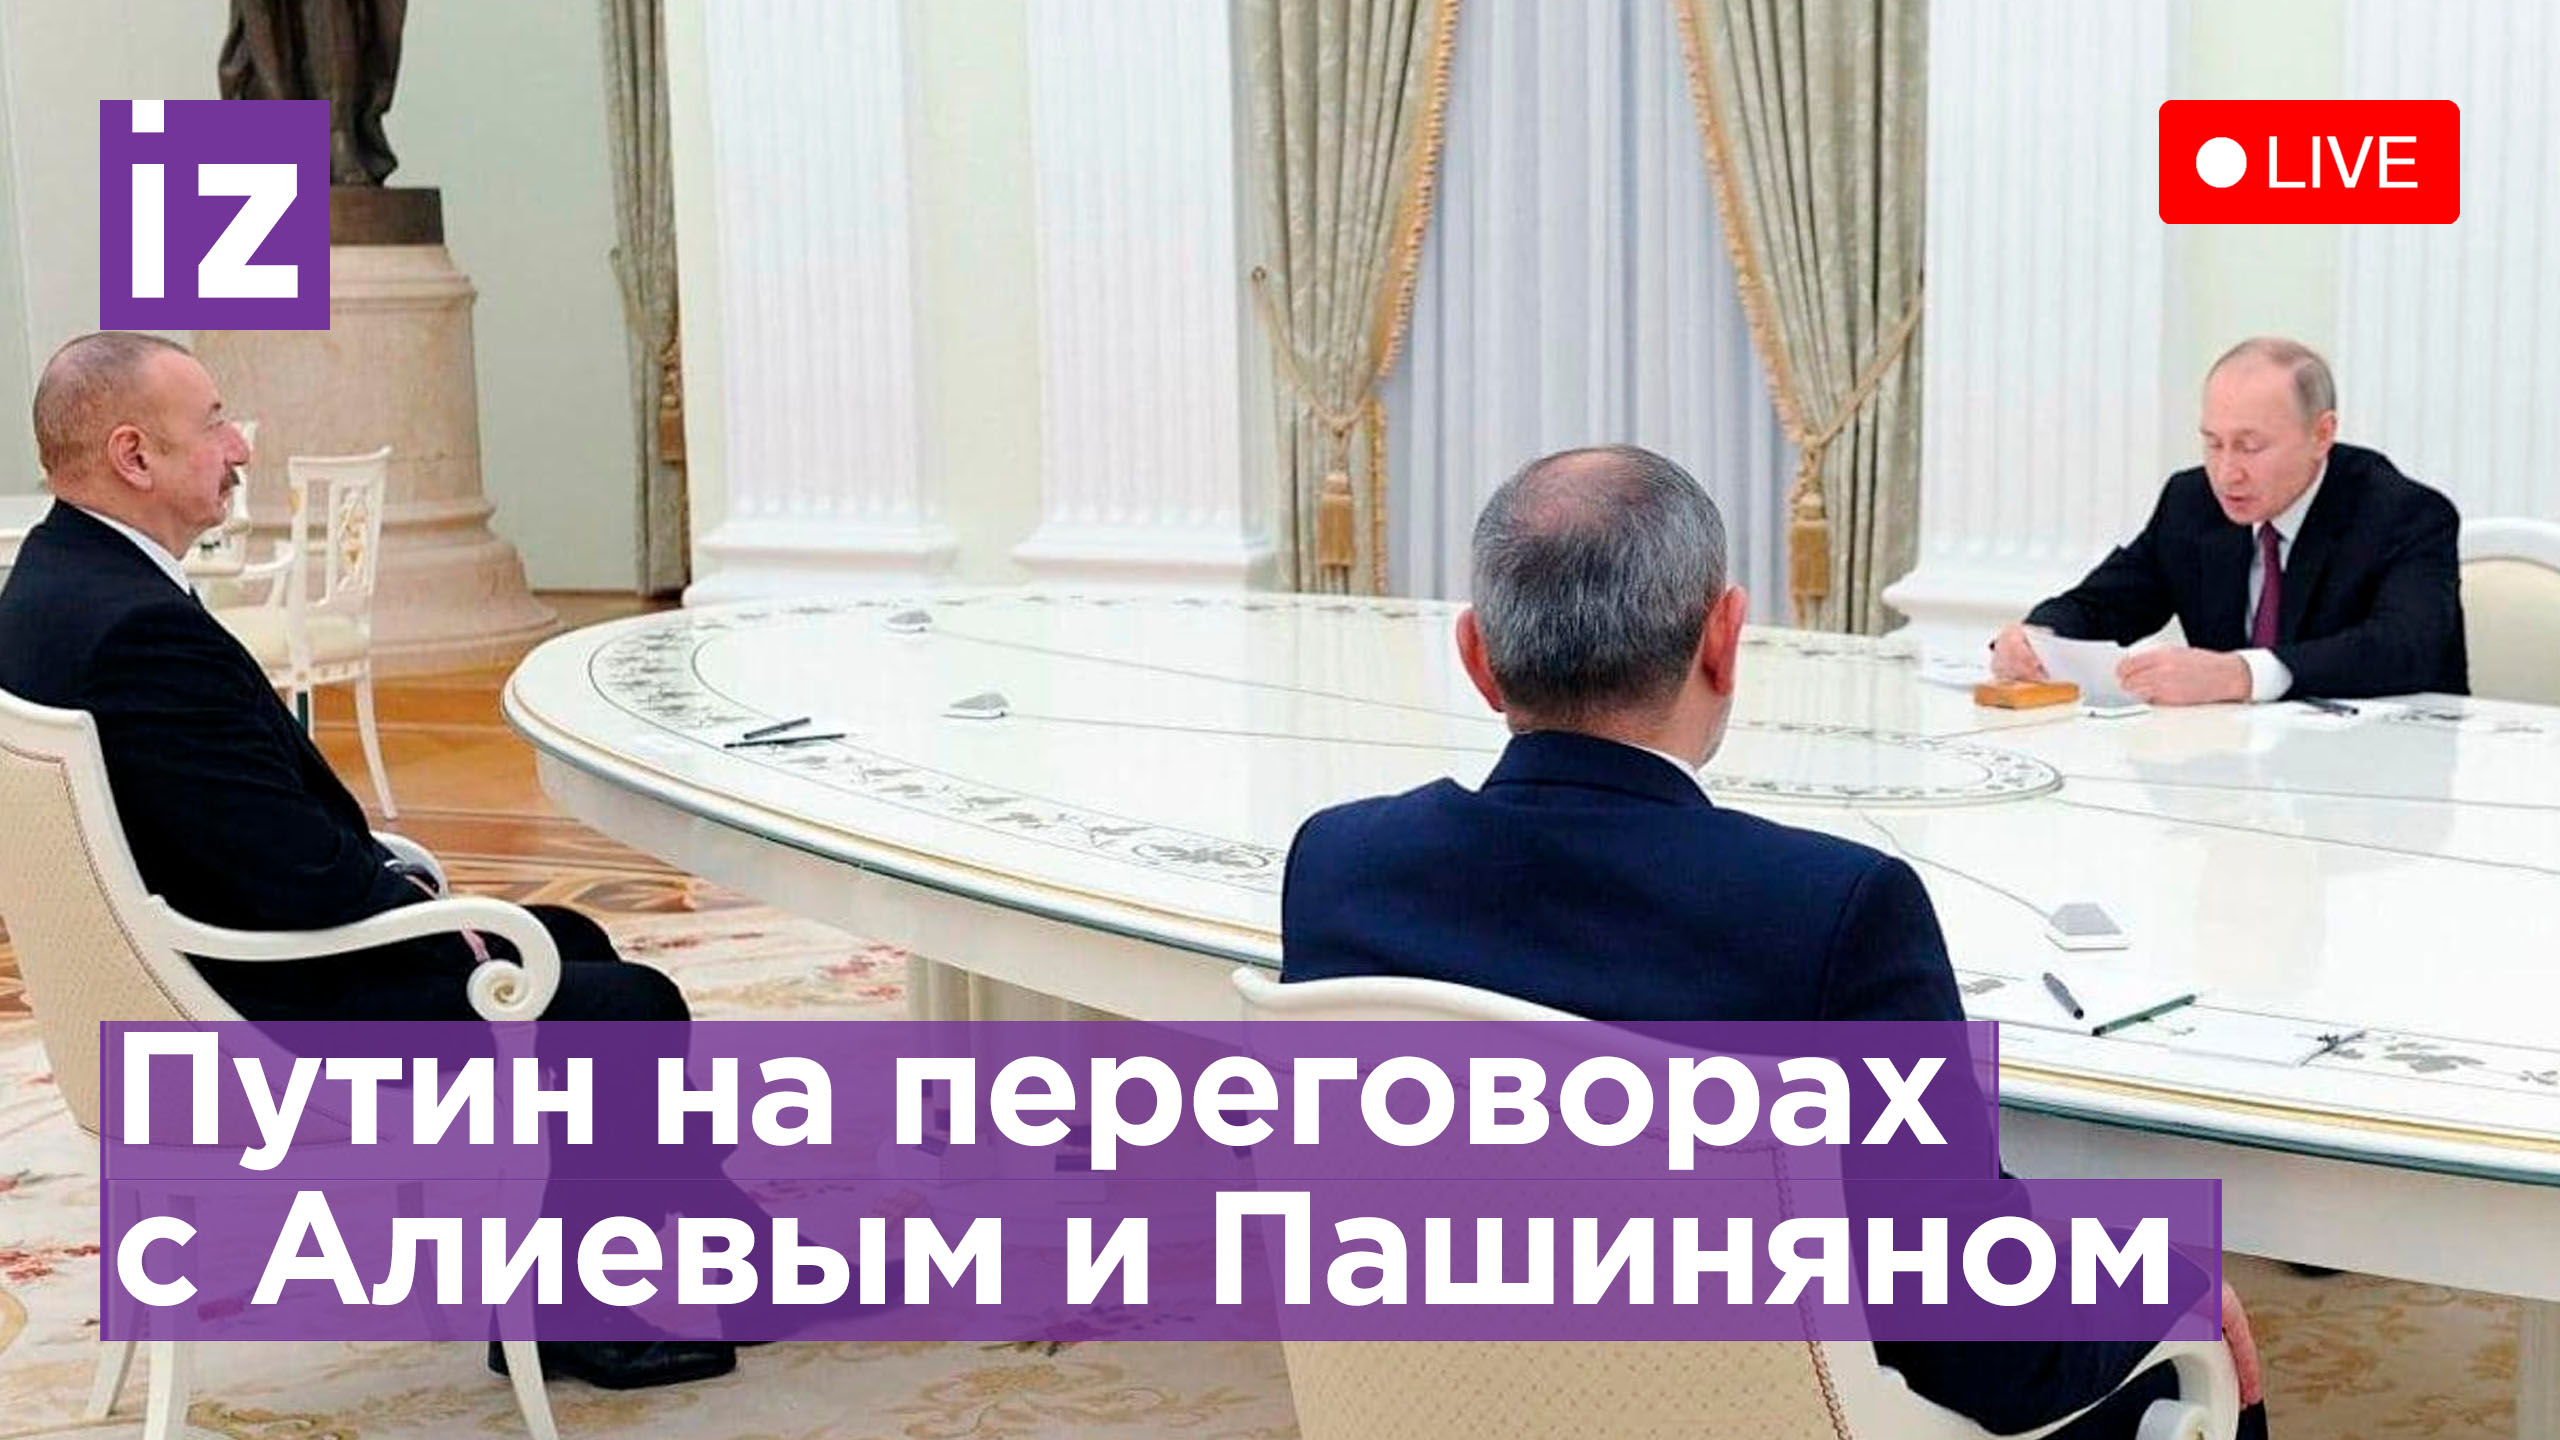 Владимир Путин на  переговорах с Алиевым и Пашиняном в Сочи. Прямая трансляция